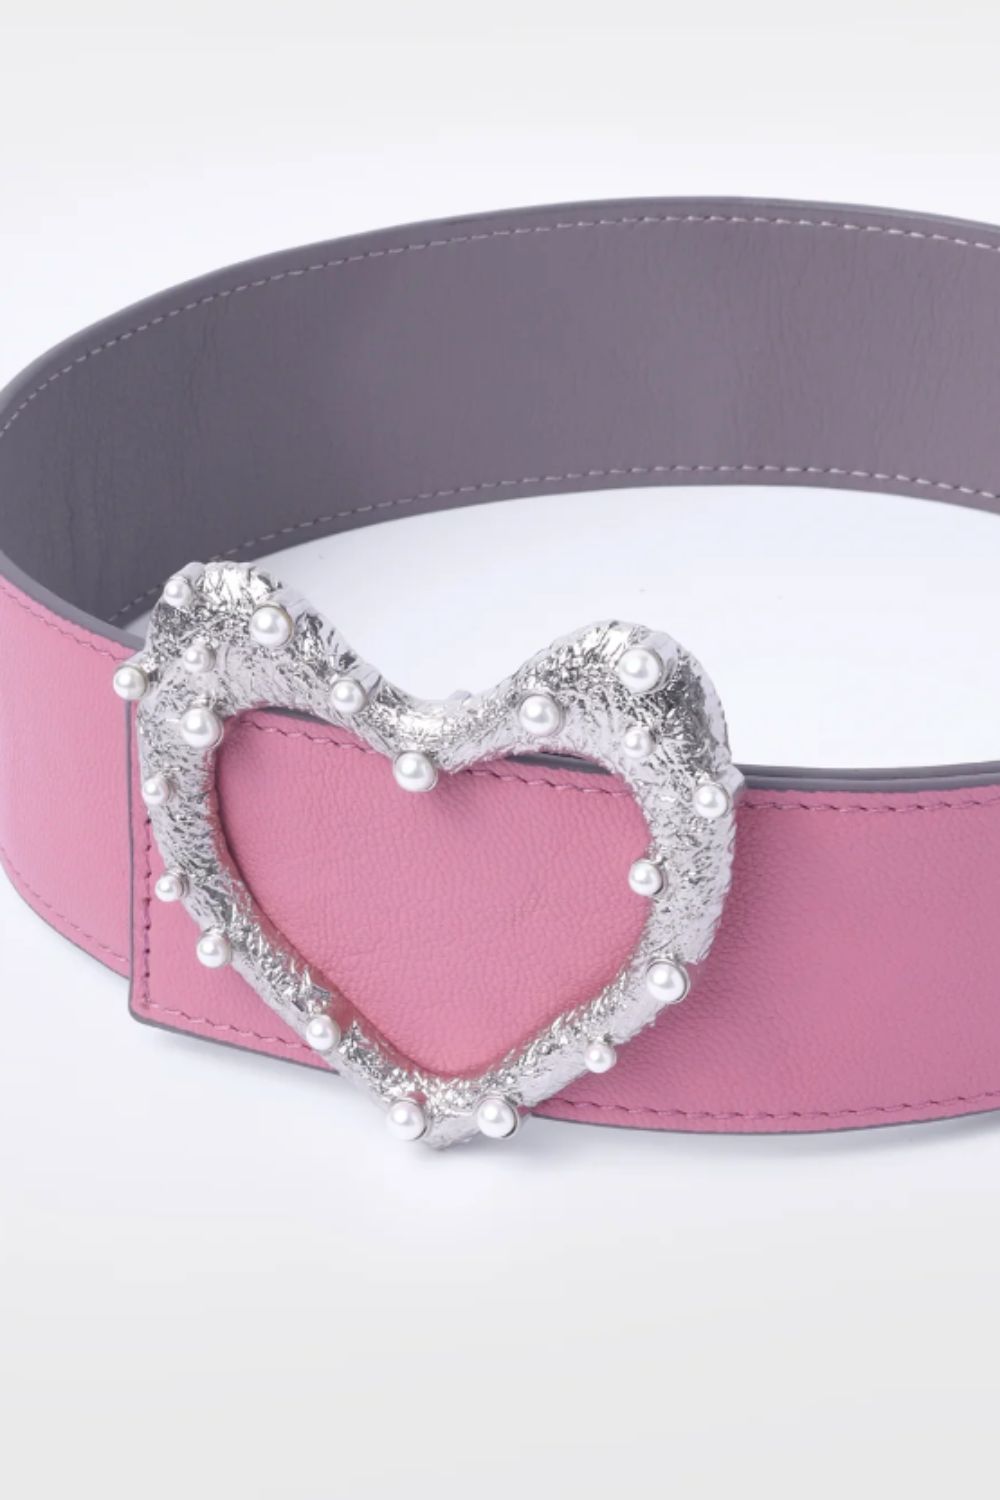 Wide Belt- Pink & Grey + Silver Heart Buckle